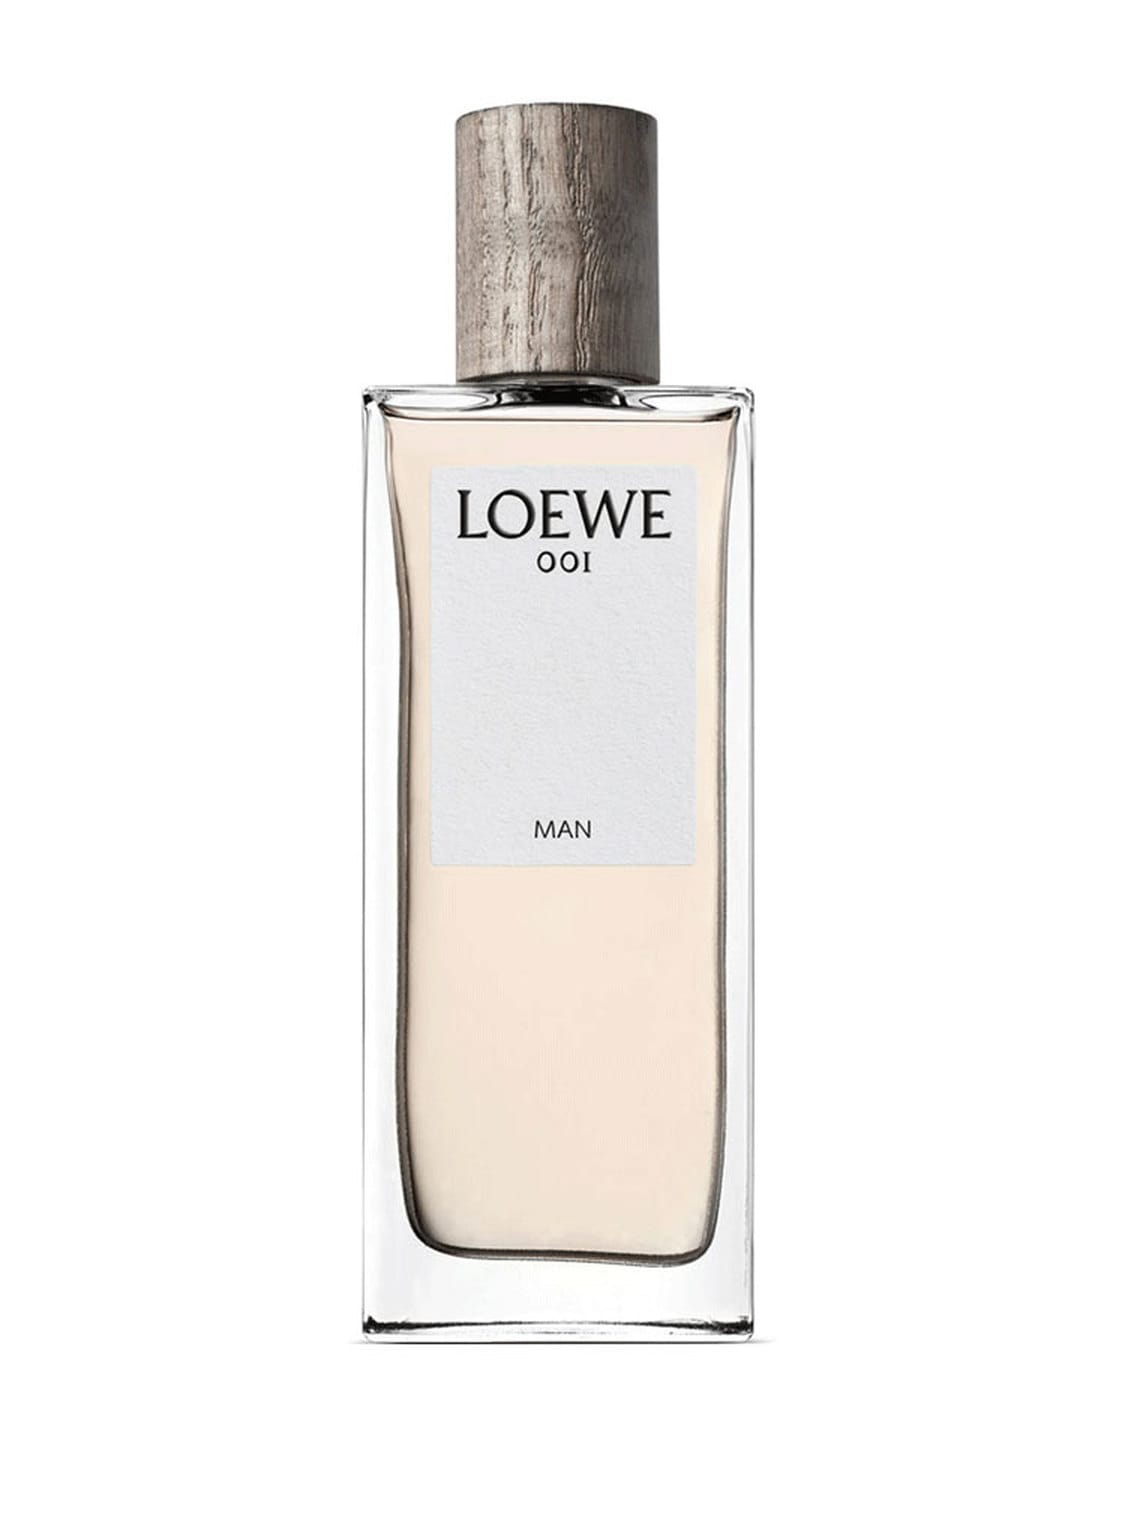 Loewe 001 Man Eau de Parfum 50 ml von Loewe